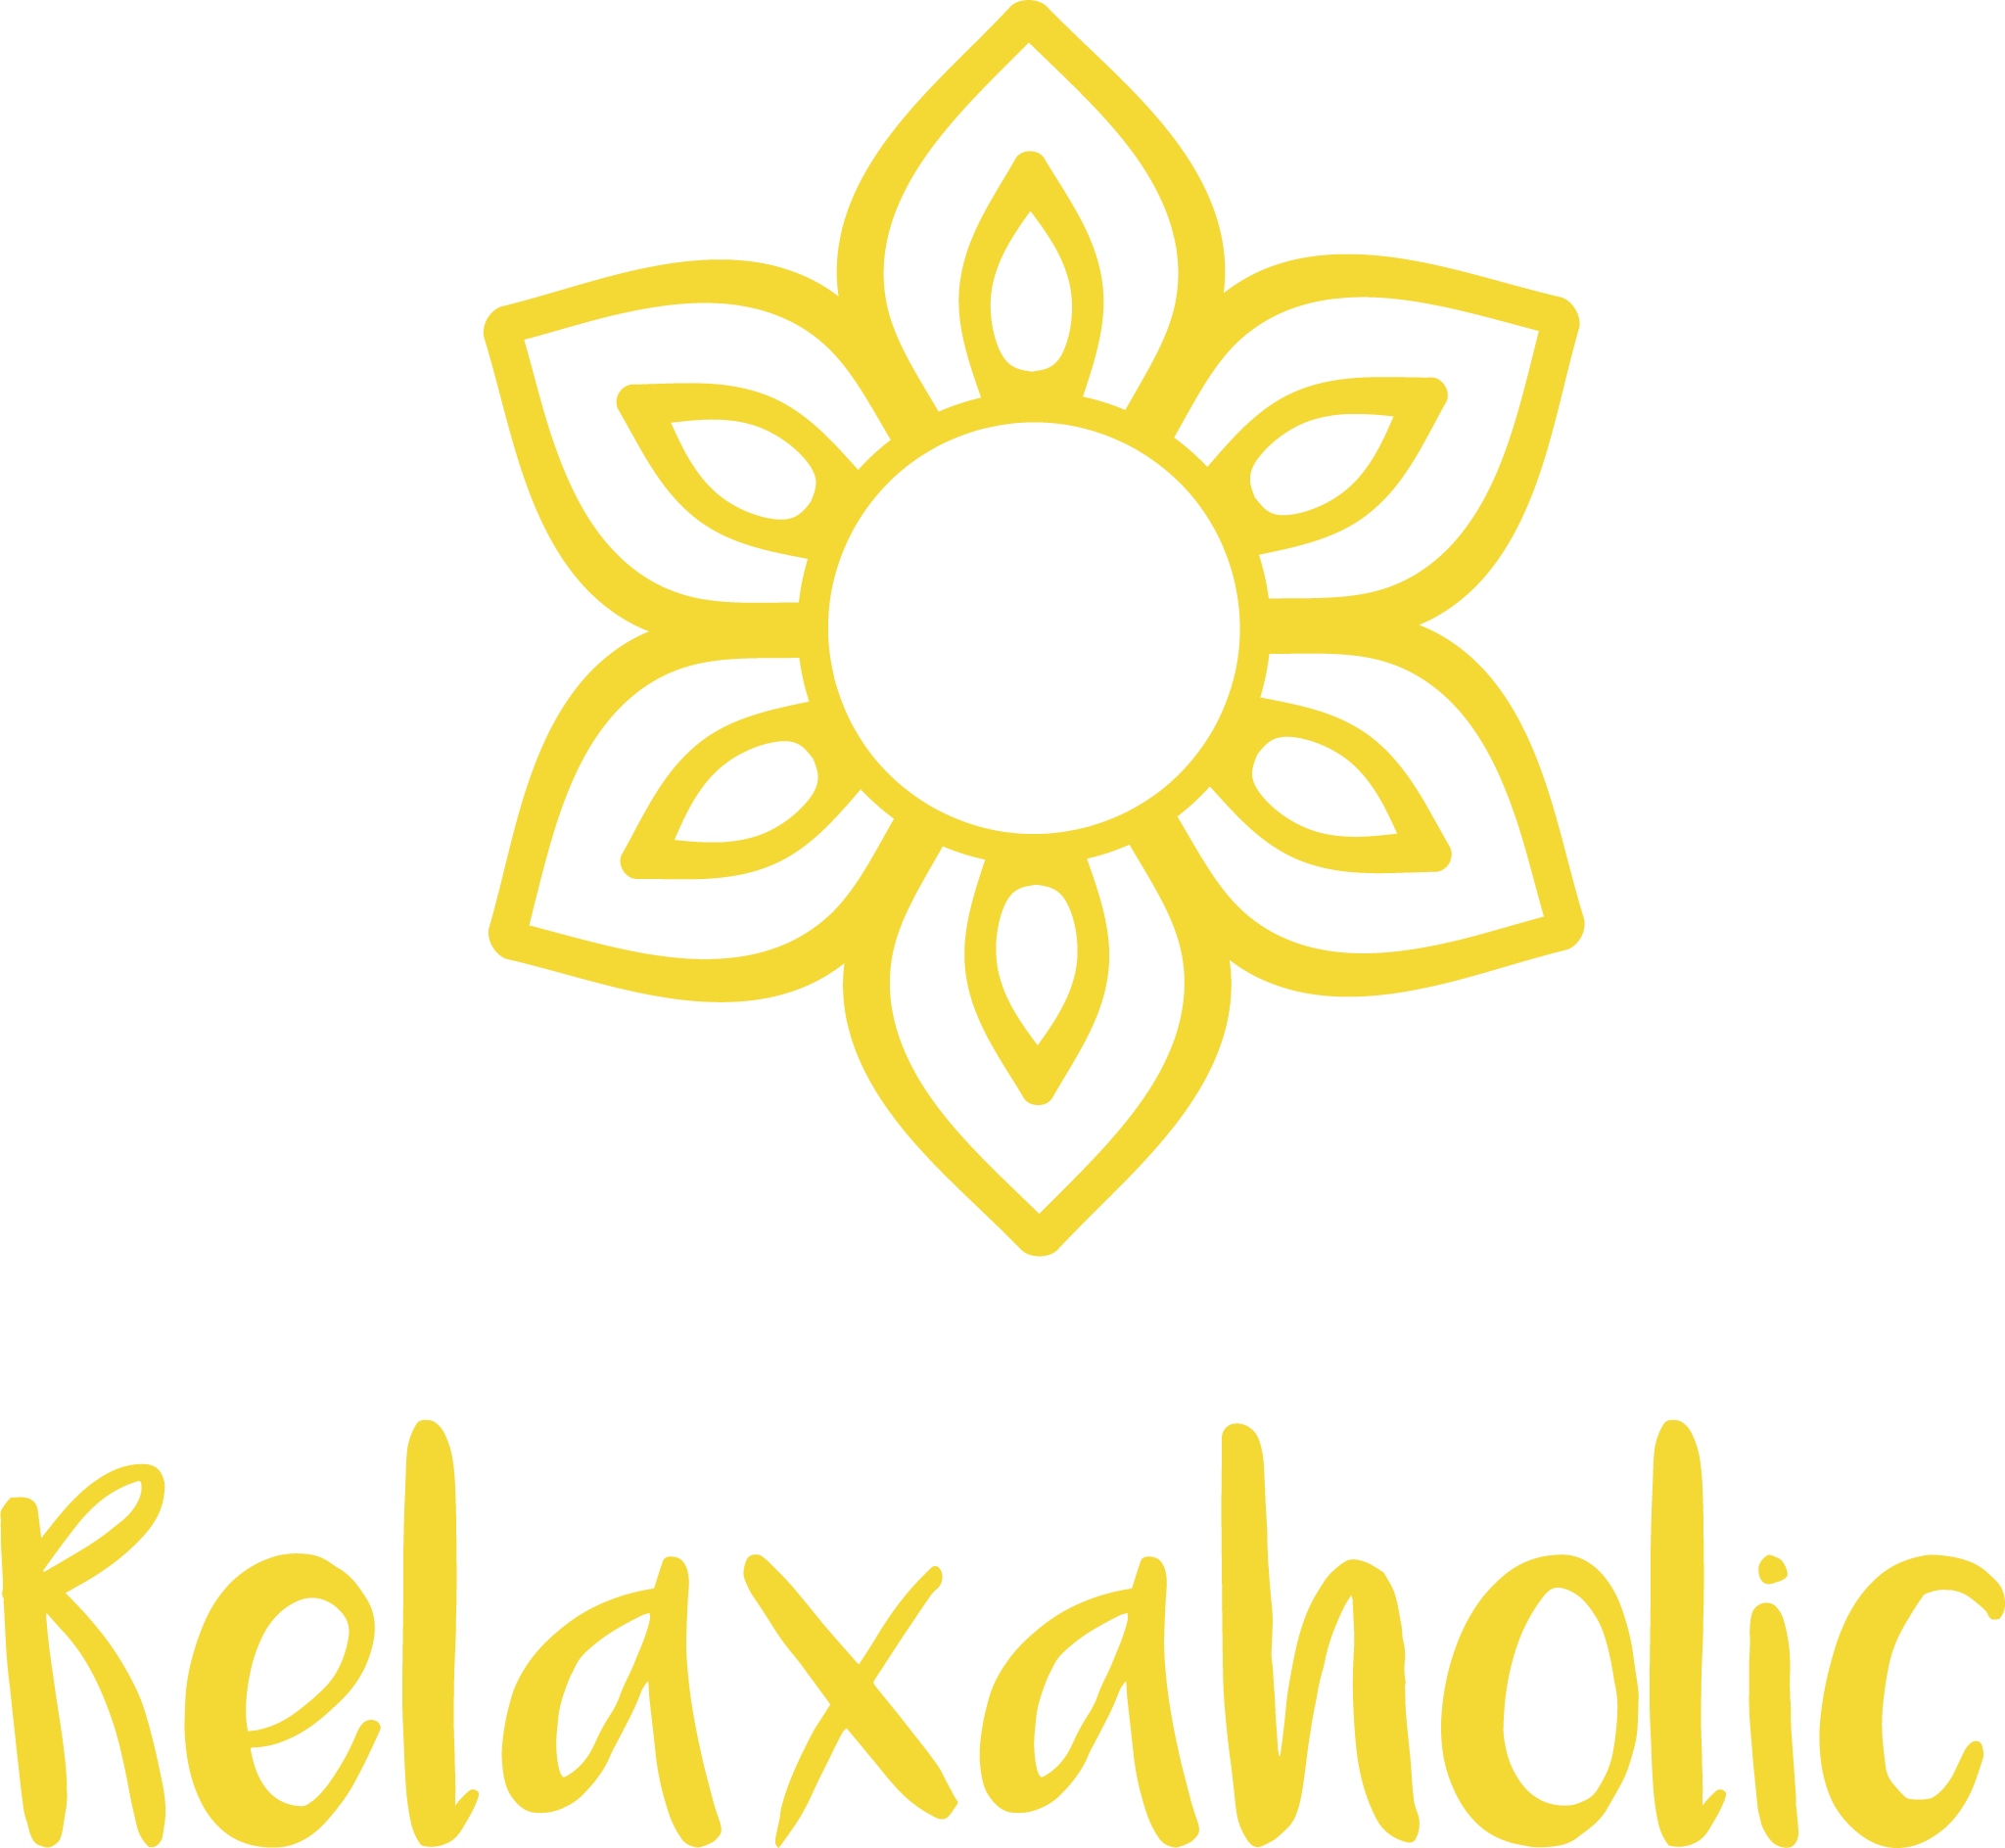 Relaxaholic - Die zentrale Anlaufstelle für mentale Gesundheit am Arbeitsplatz. Logo